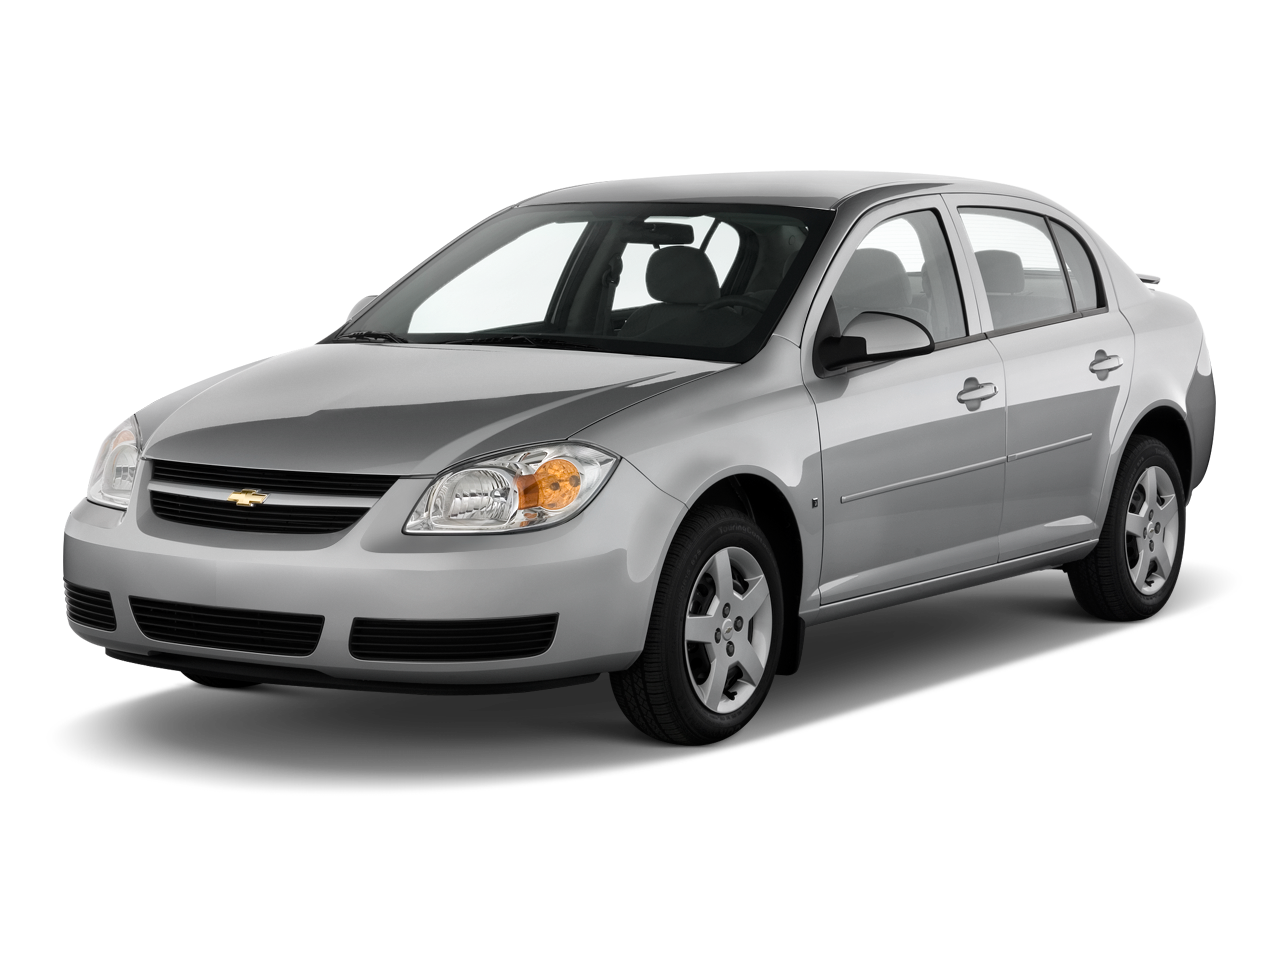 Chevrolet Cobalt Backgrounds, Compatible - PC, Mobile, Gadgets| 1280x960 px